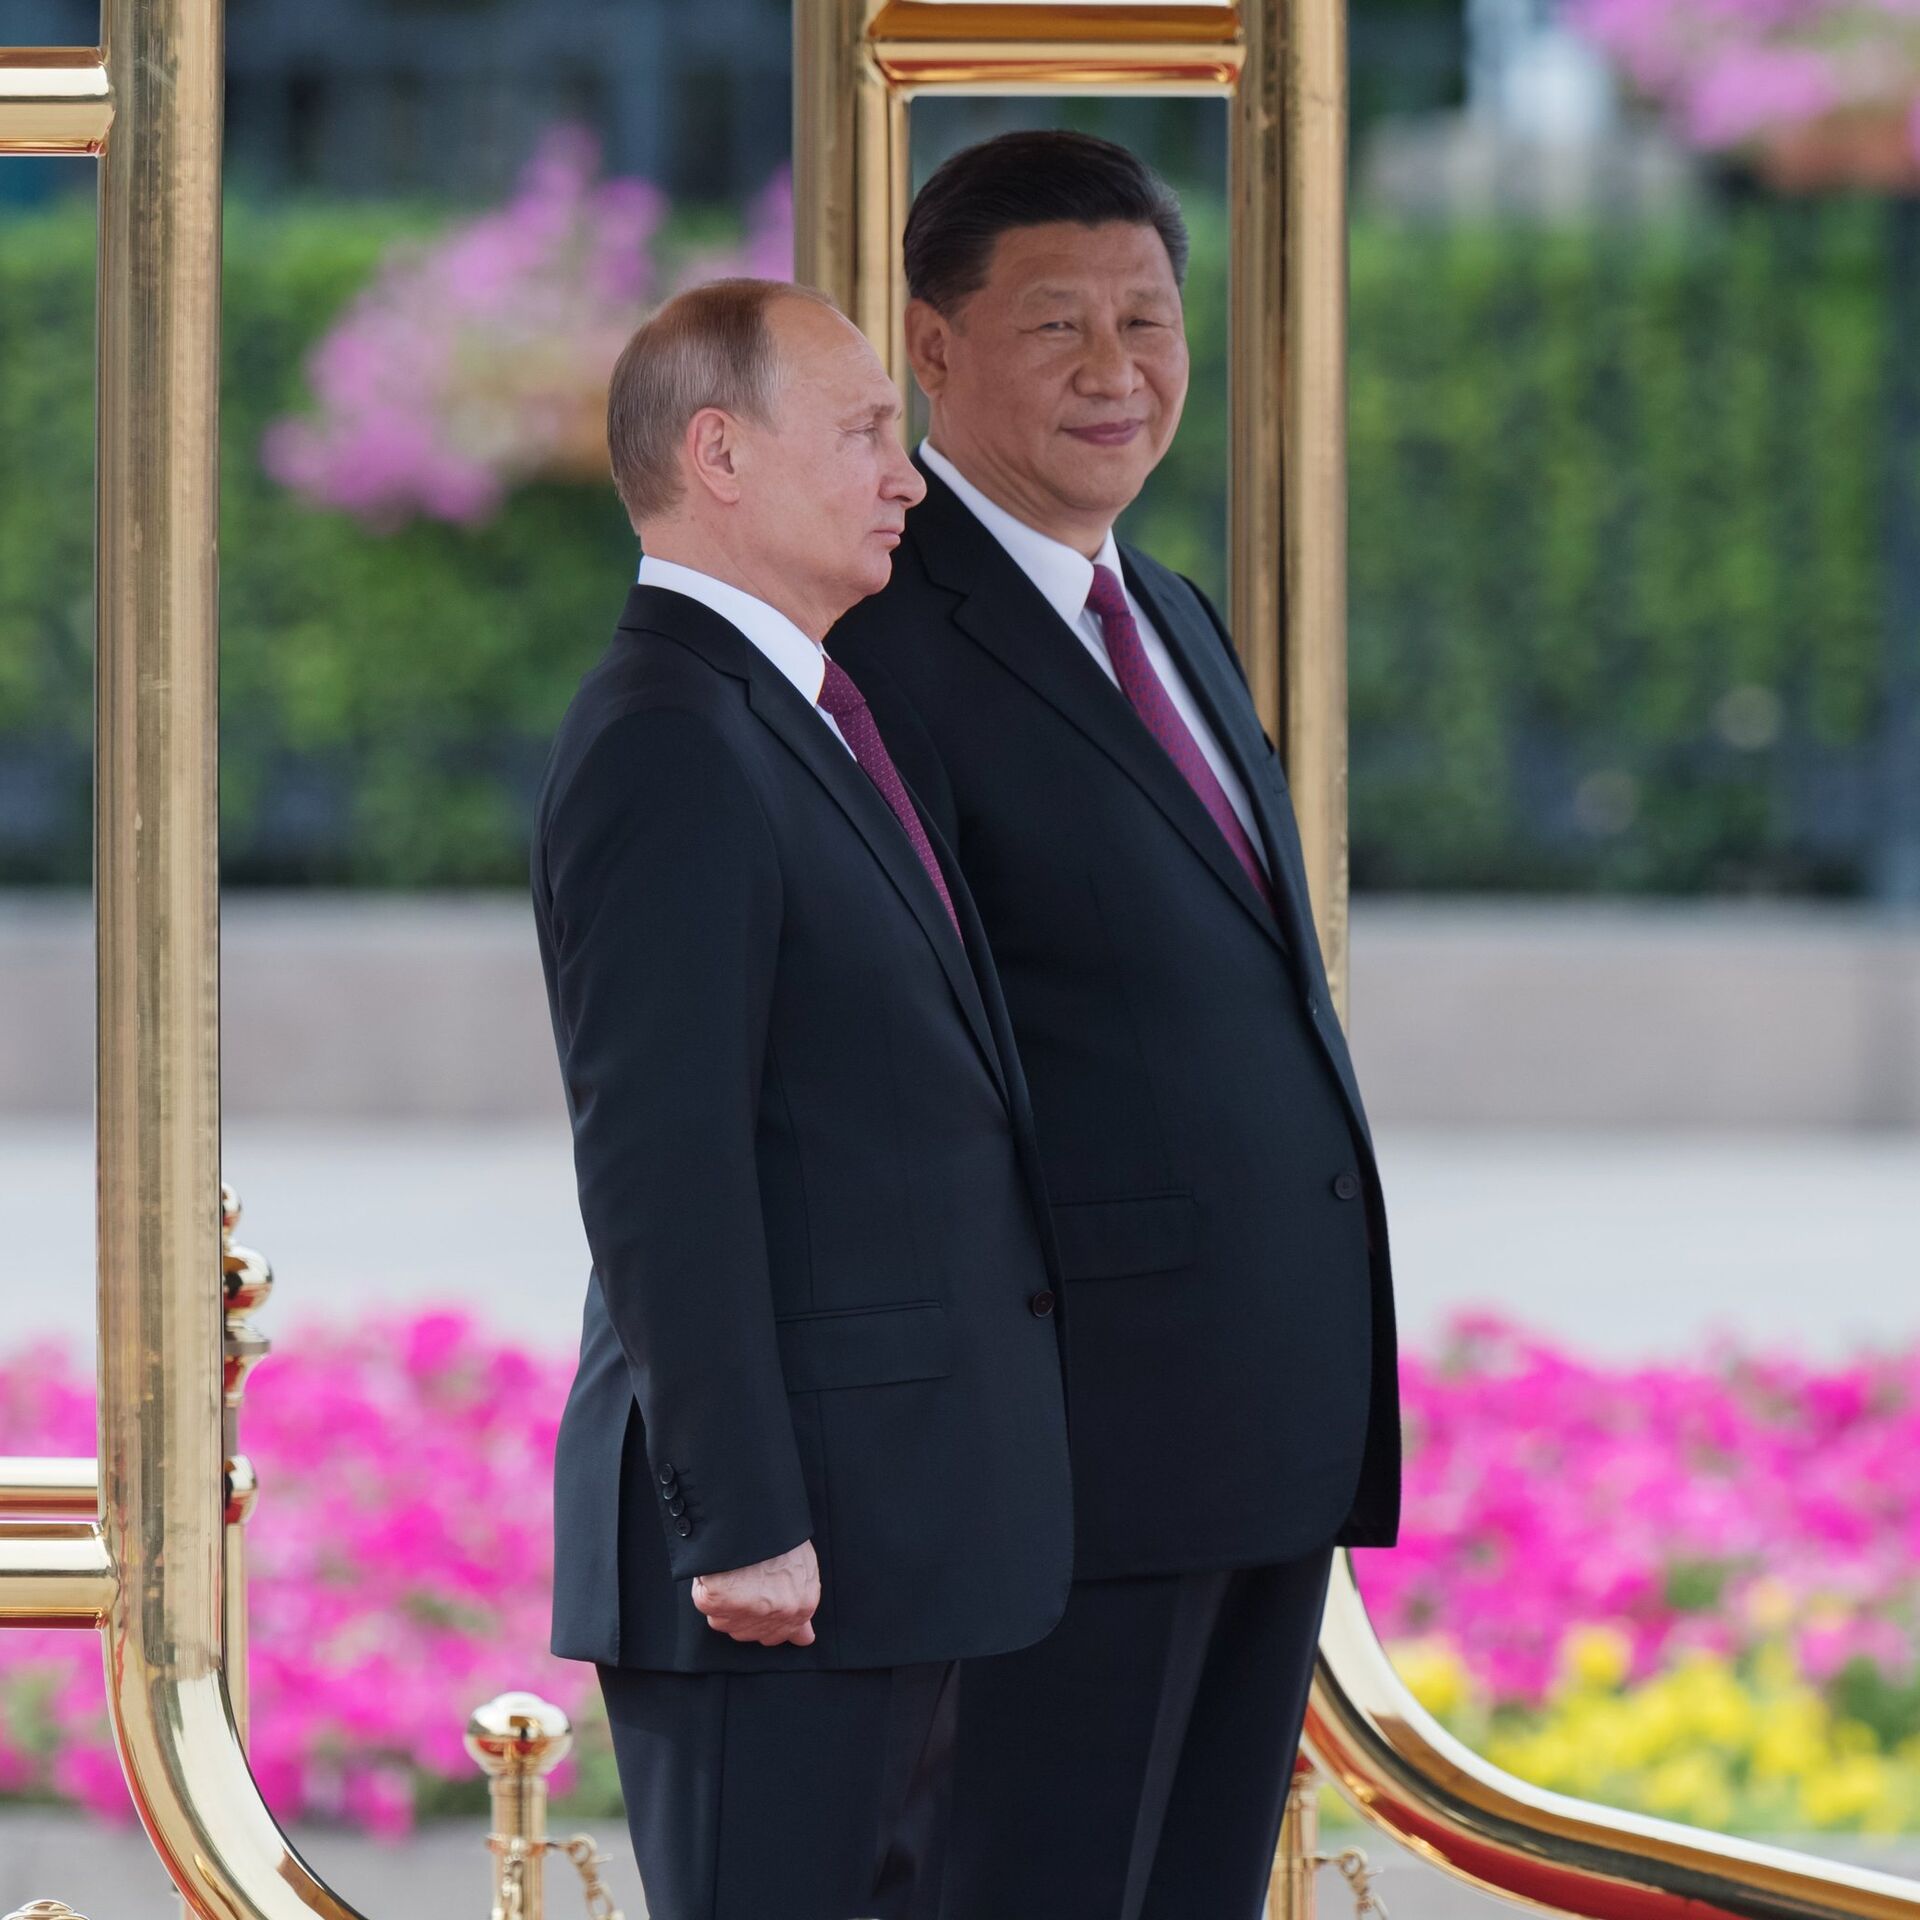 Путин Подарил Баню Из Алтайского Кедра Фото